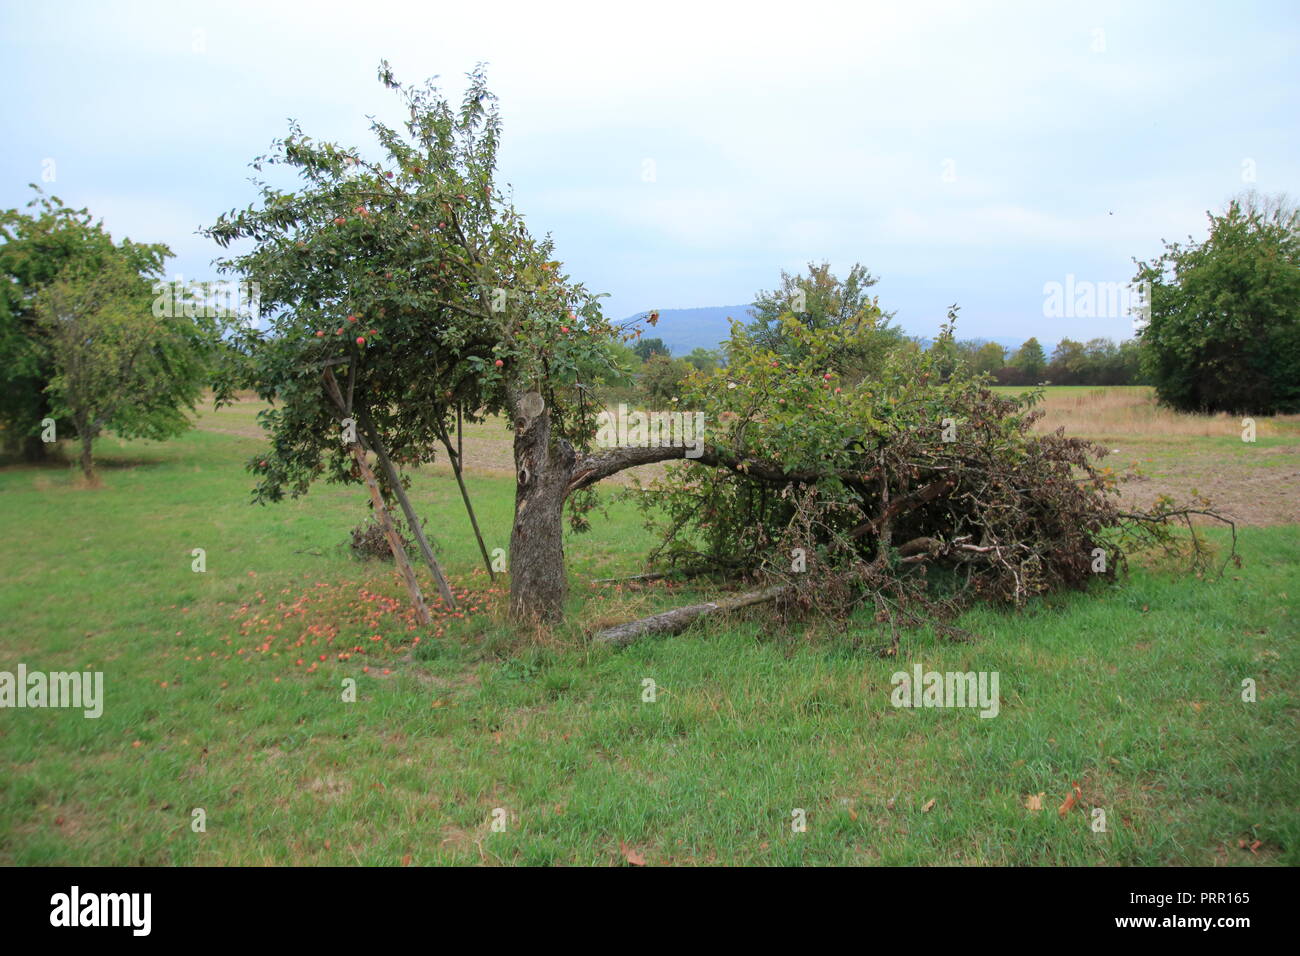 Vertrockneter Apfel mit trockenen Blättern, einem abgebrochenen Apfelbaum Ast Foto Stock